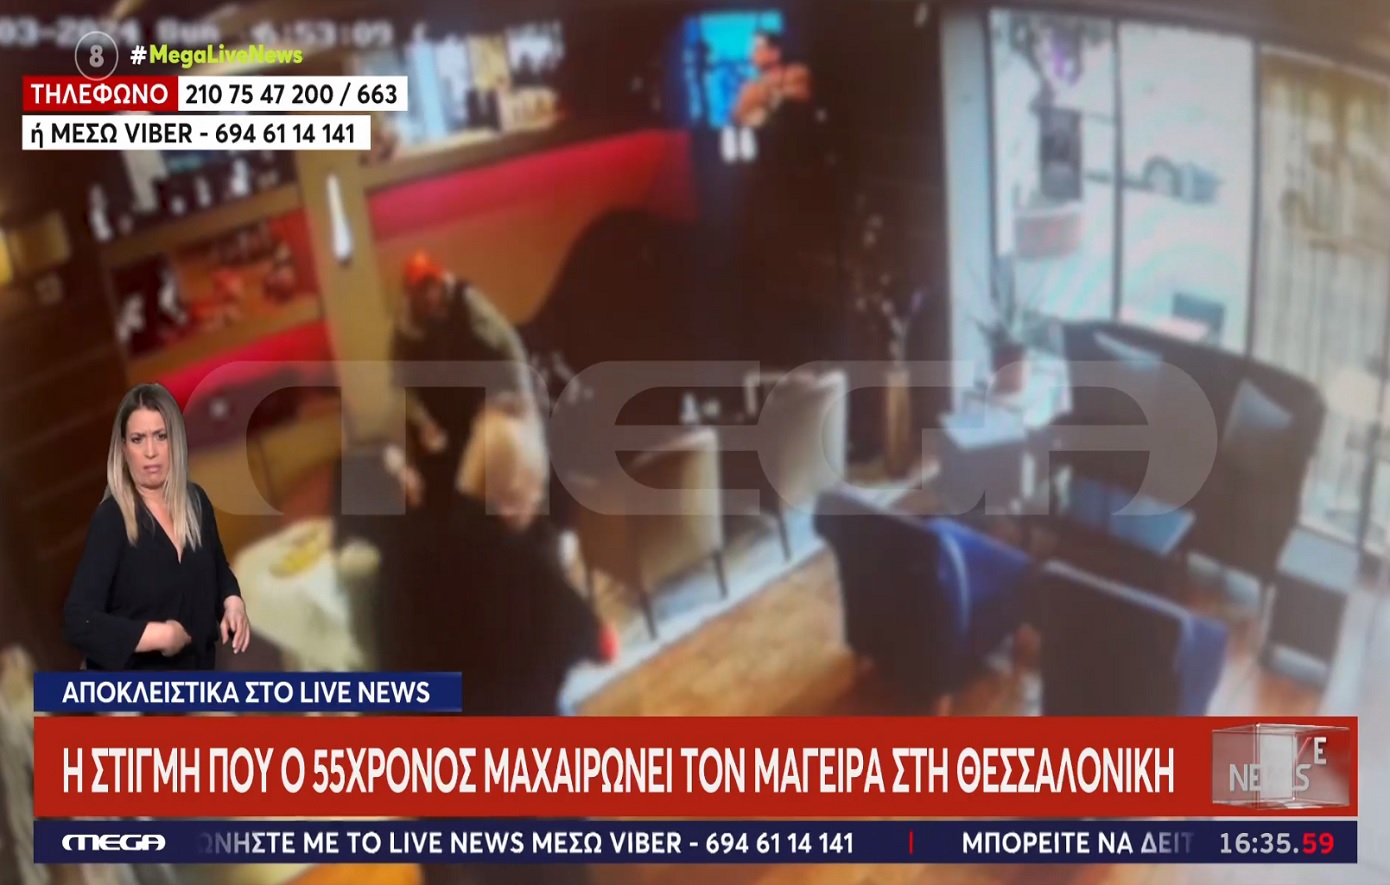 Η στιγμή που ο πελάτης στη Θεσσαλονίκη μαχαιρώνει τον μάγειρα για το… μπαγιάτικο κοντοσούβλι – Το βίντεο ντοκουμέντο